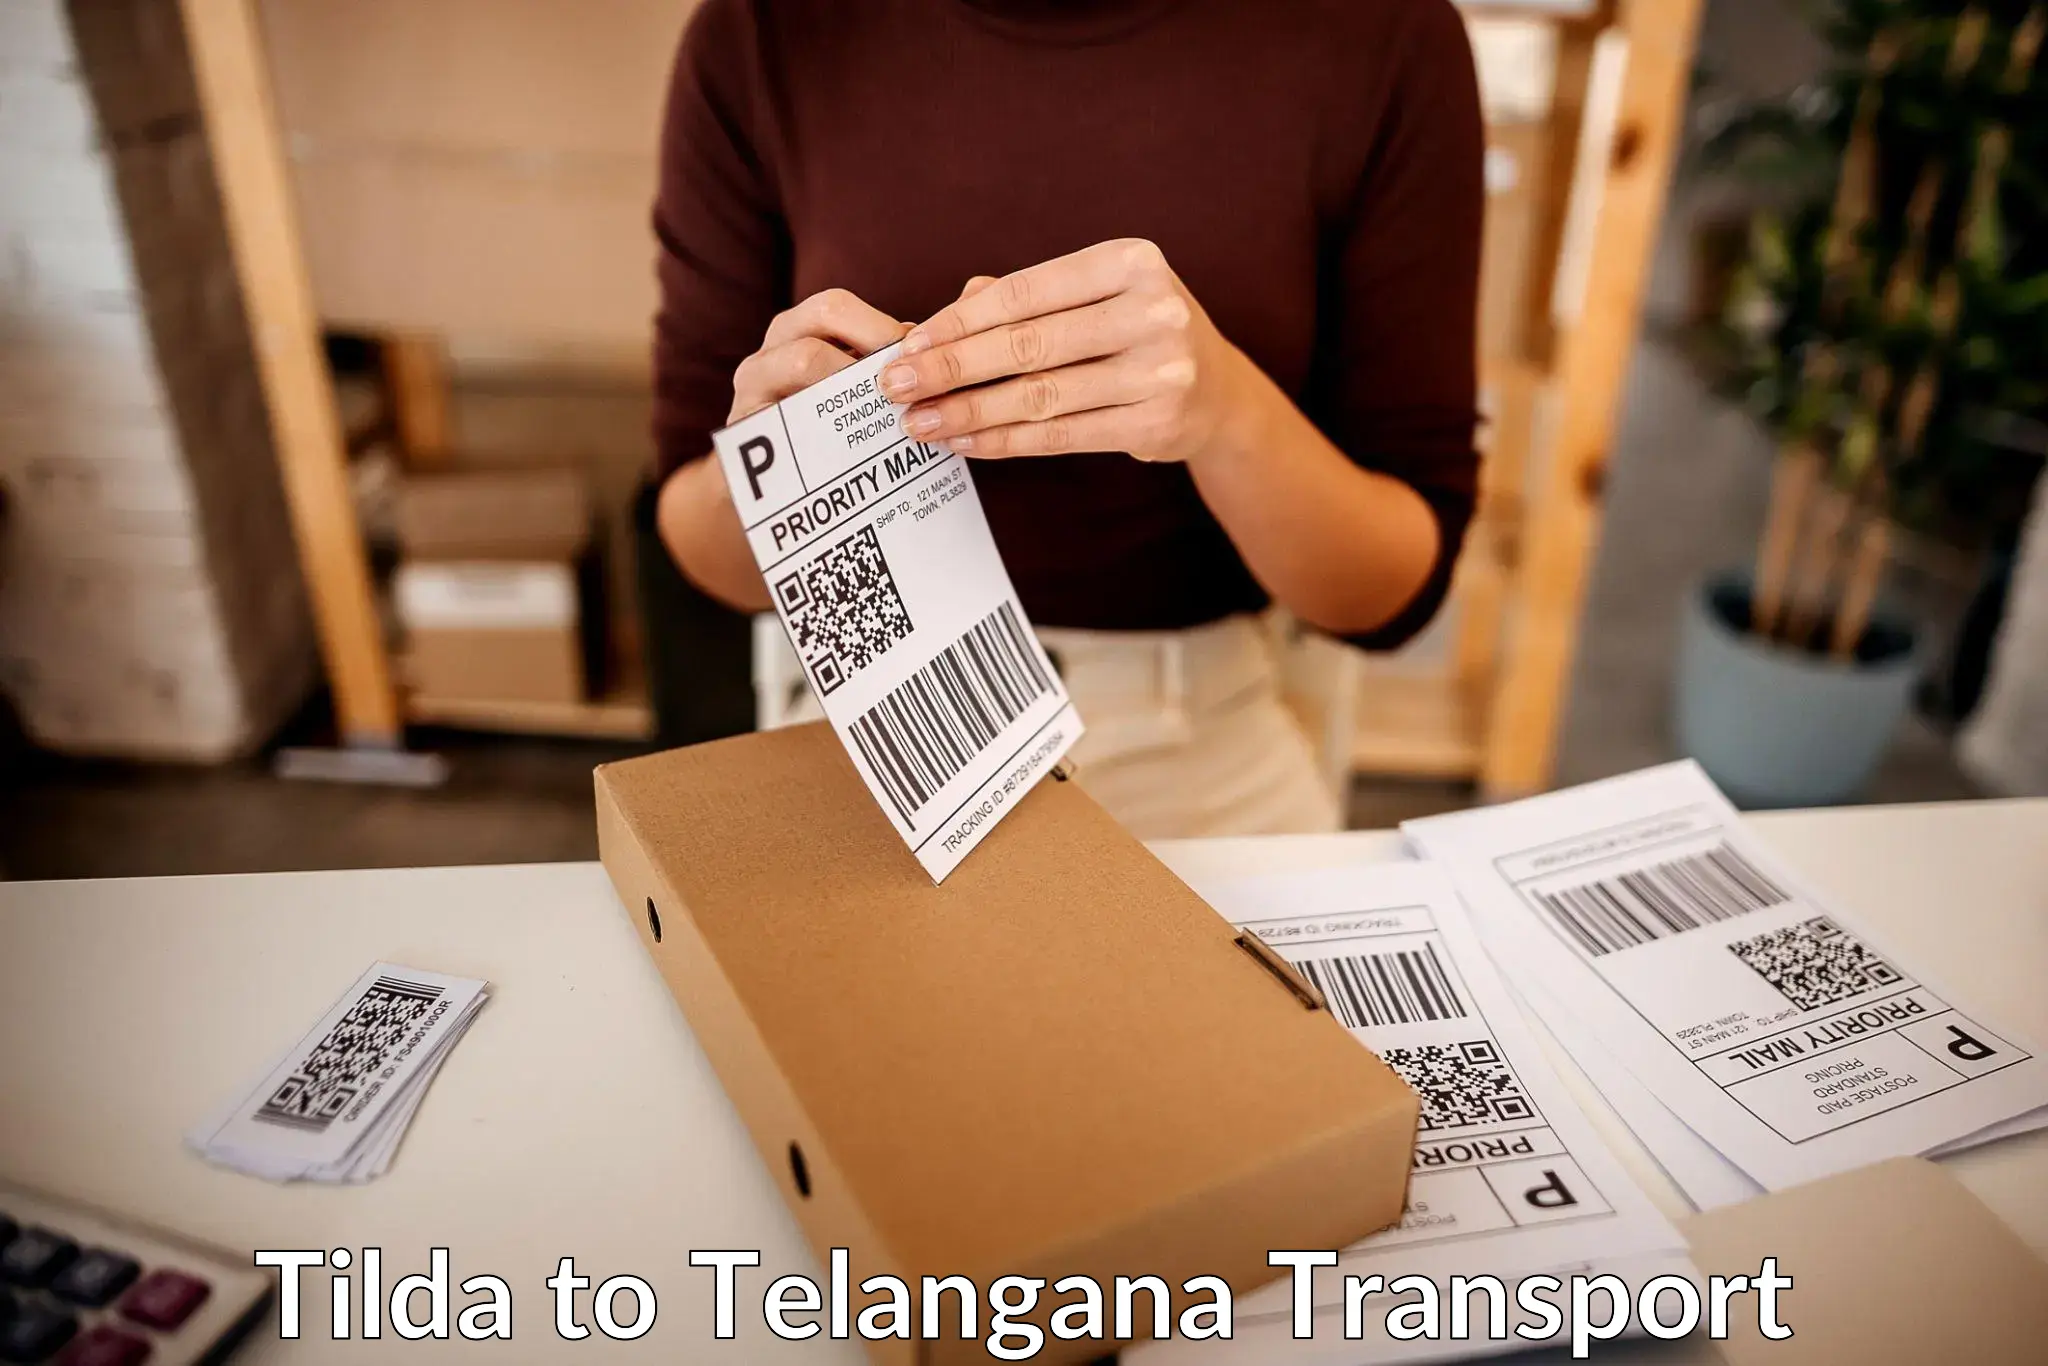 Online transport in Tilda to Dubbak